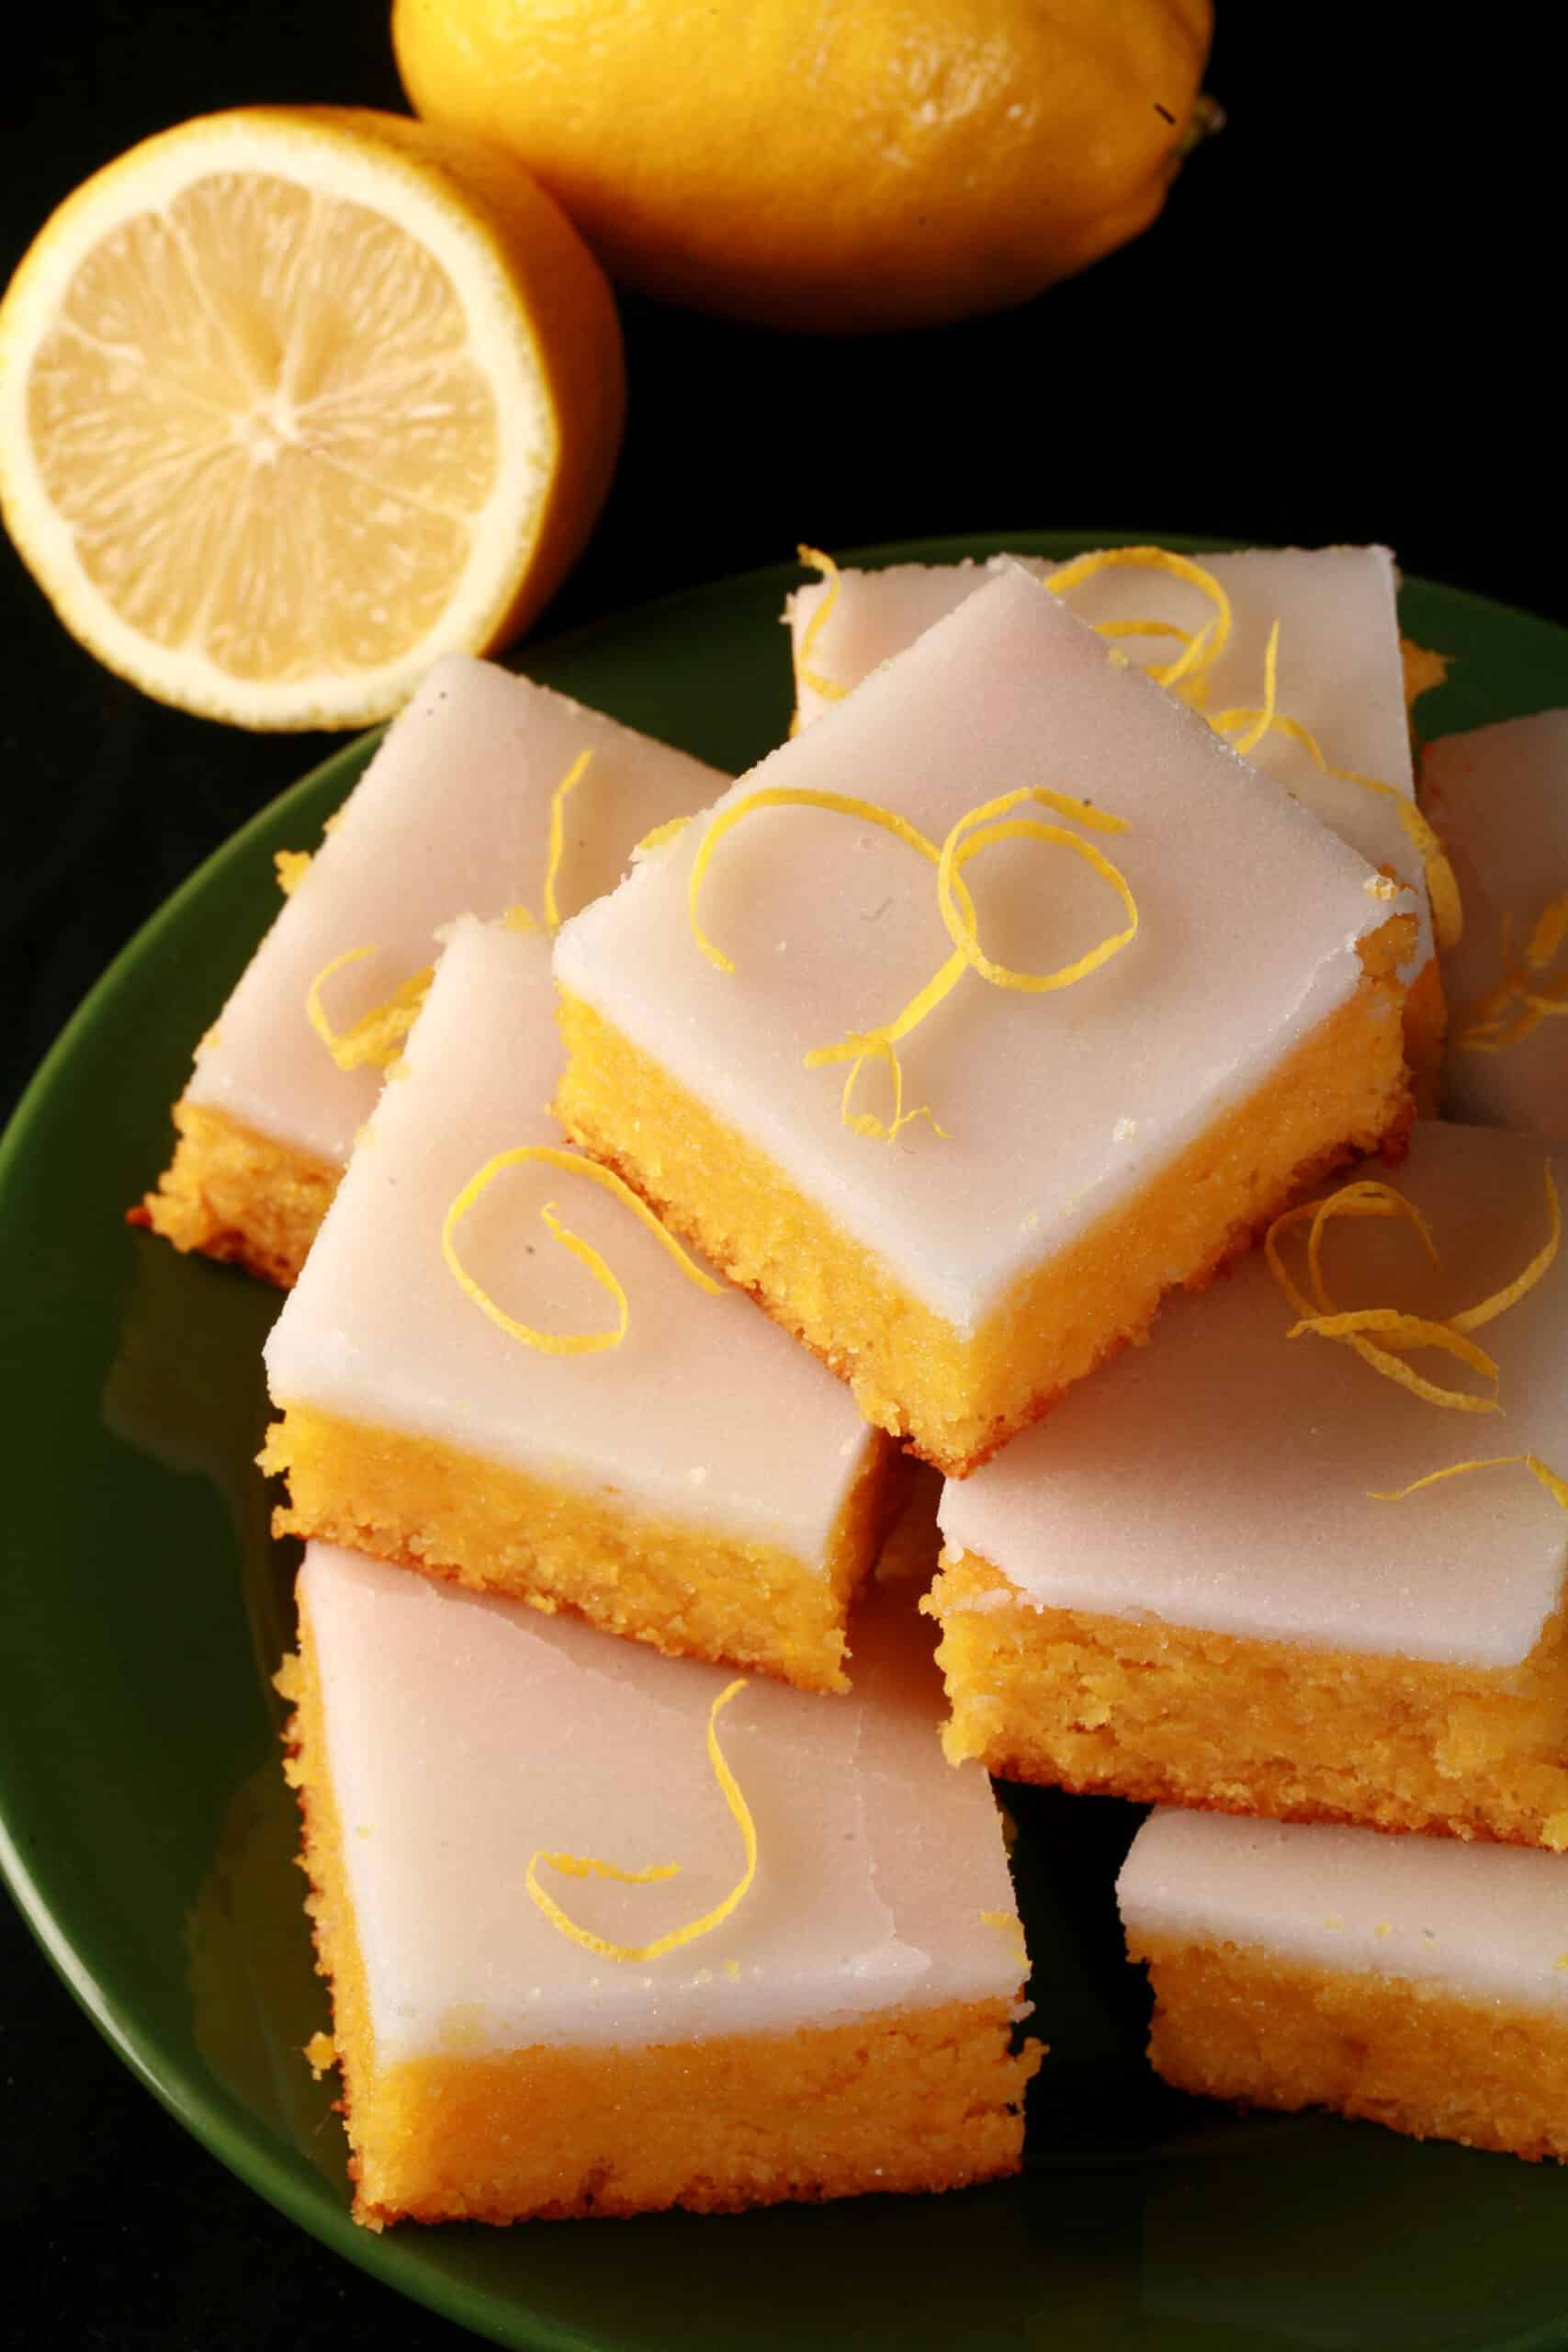 A plate of keto lemon bars topped with a white glaze.